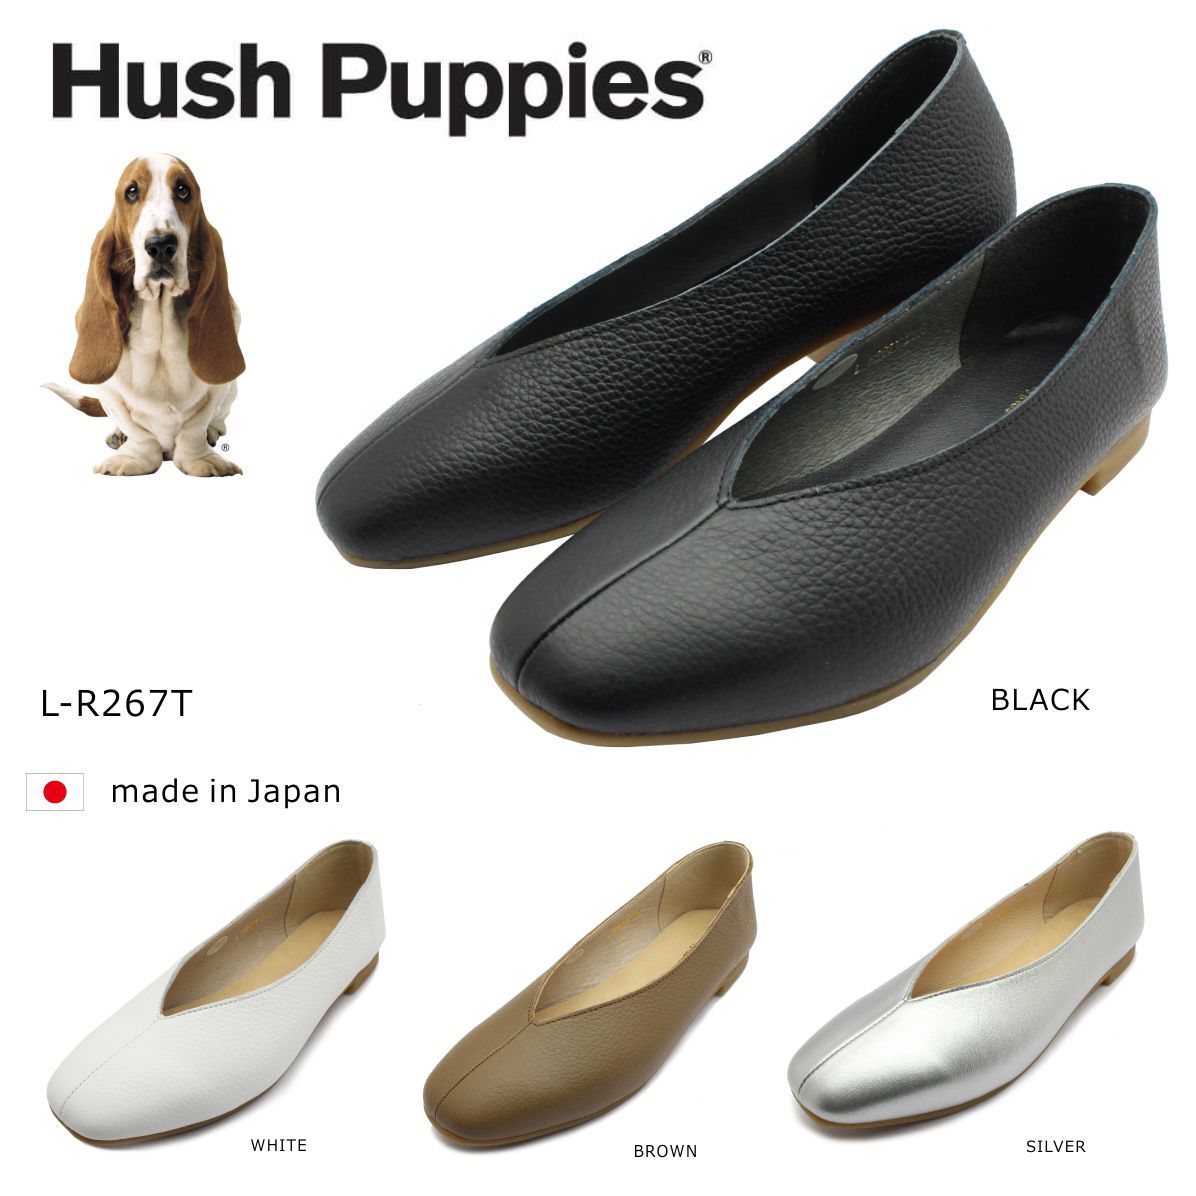 ハッシュパピー レディース Vカット スクエア カッターシューズ フラット カジュアル L-R267T 日本製 Hush puppies r267t  婦人靴 :hushr267t:ミッキー靴店 通販 